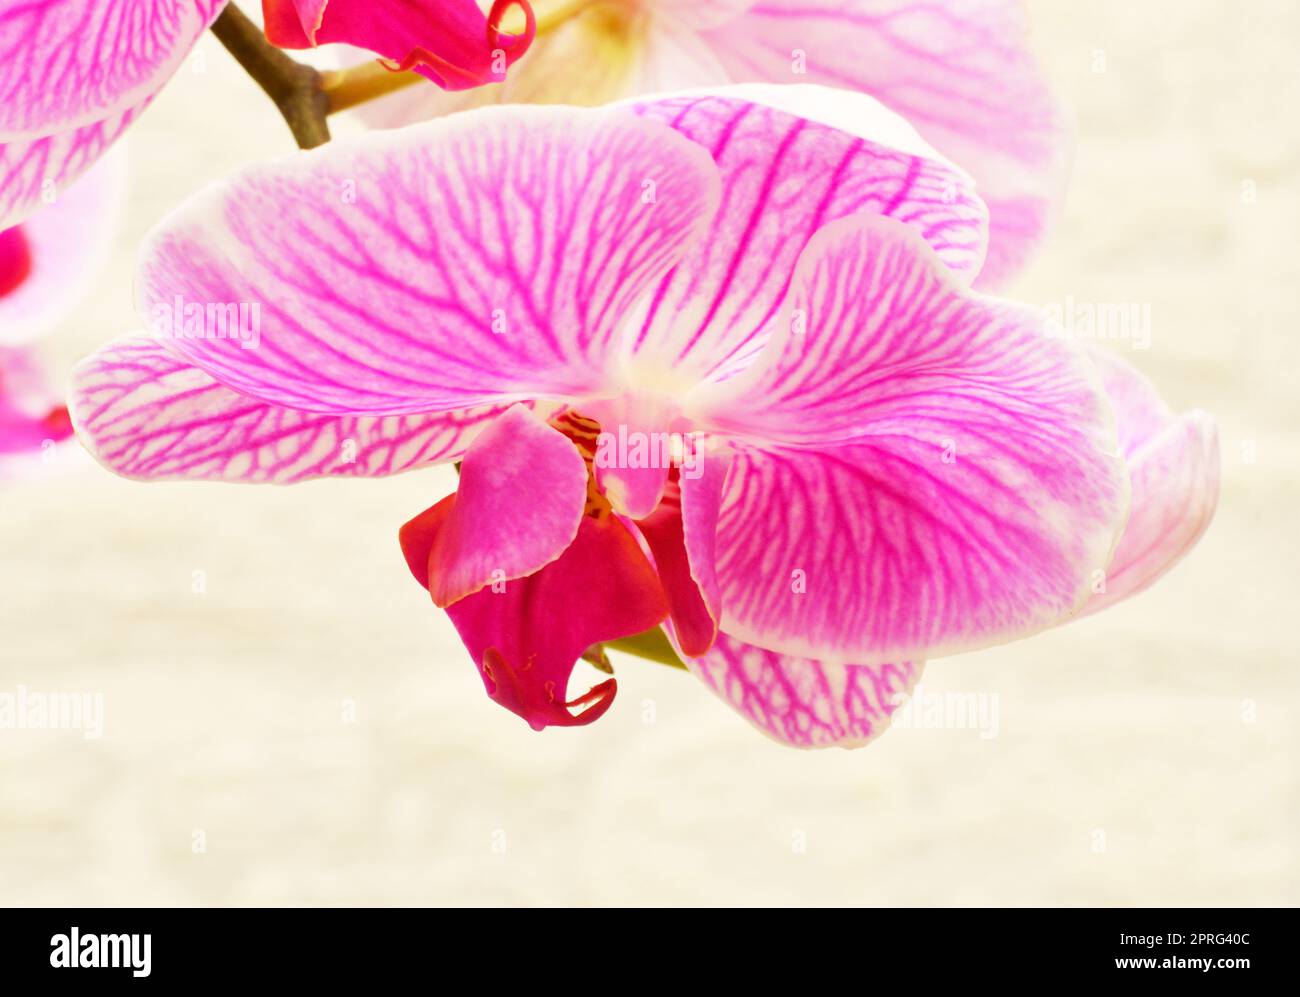 Fiore di Phalaenopsis (Latin. Phalaenopsis) o Orchid (Latin. Orchidaceae) di colore bianco-porpora Foto Stock